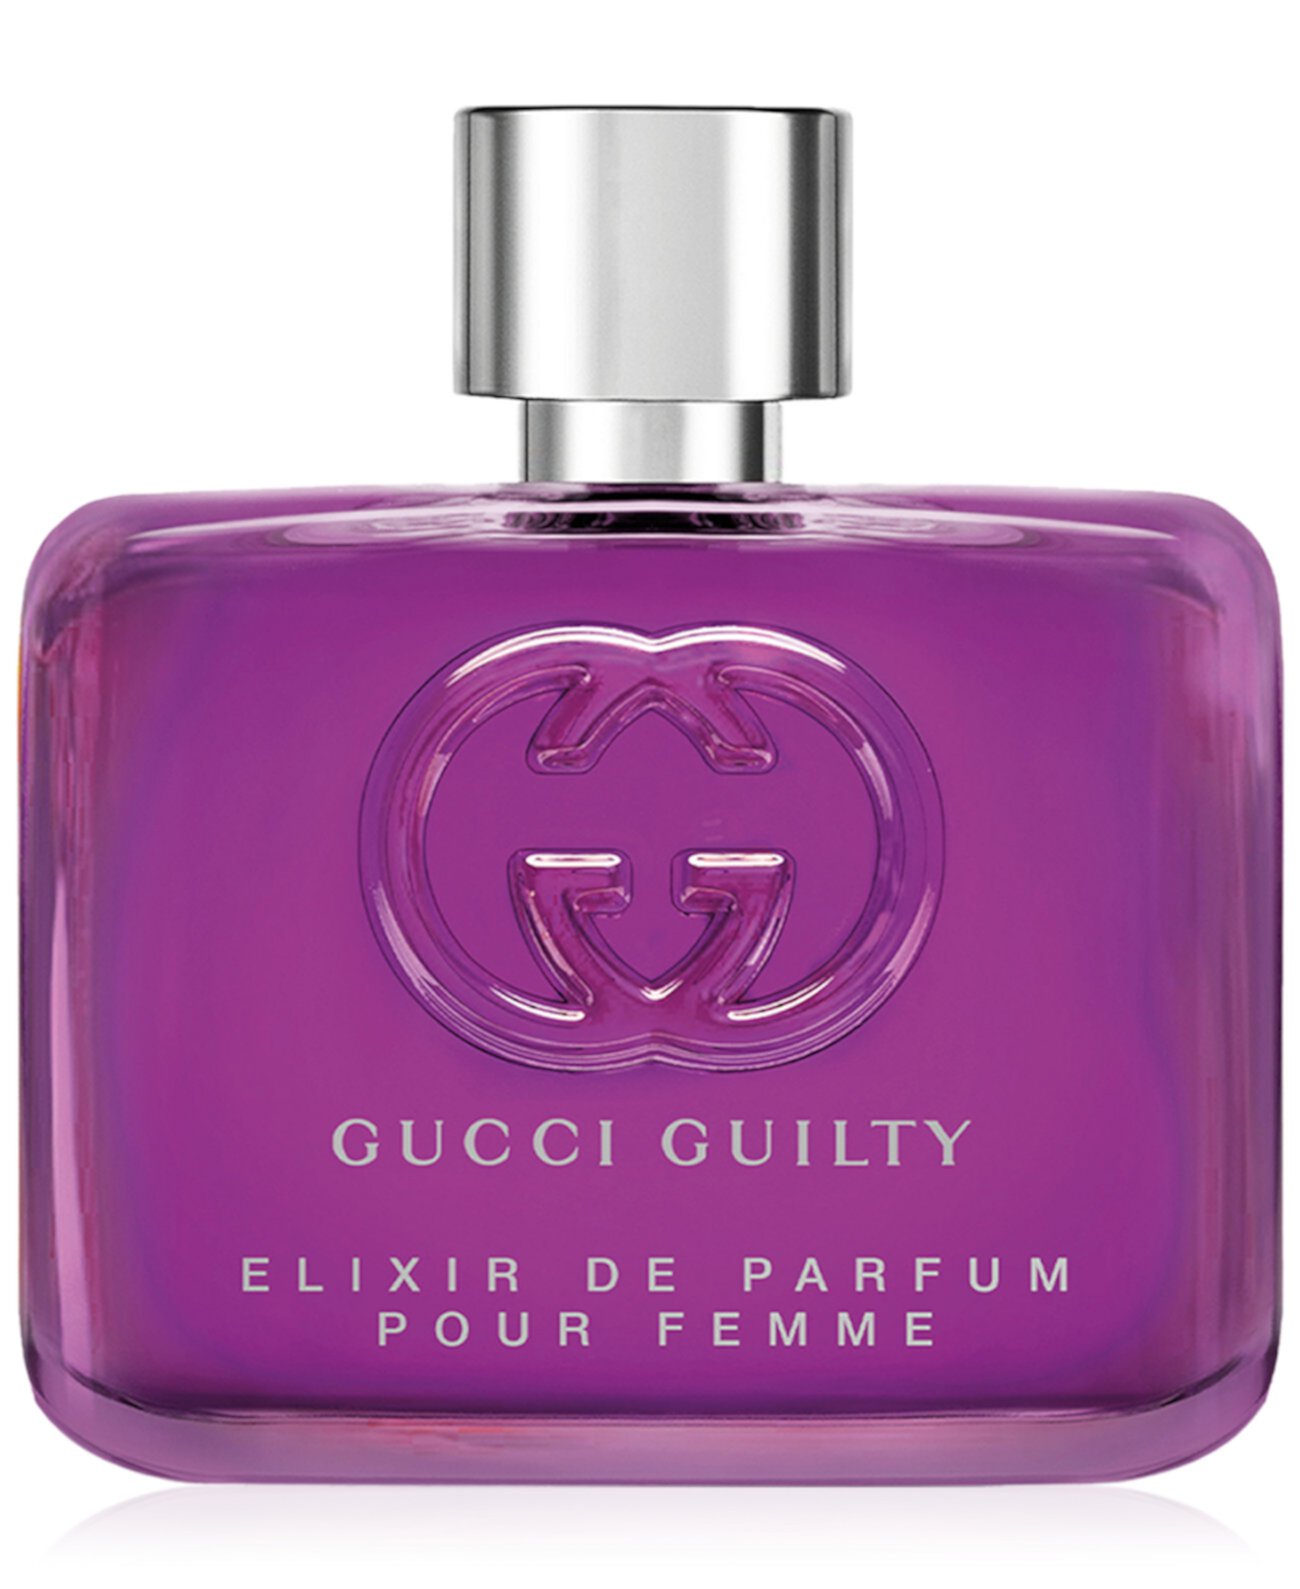 Guilty Elixir de Parfum Pour Femme, 2 oz. GUCCI